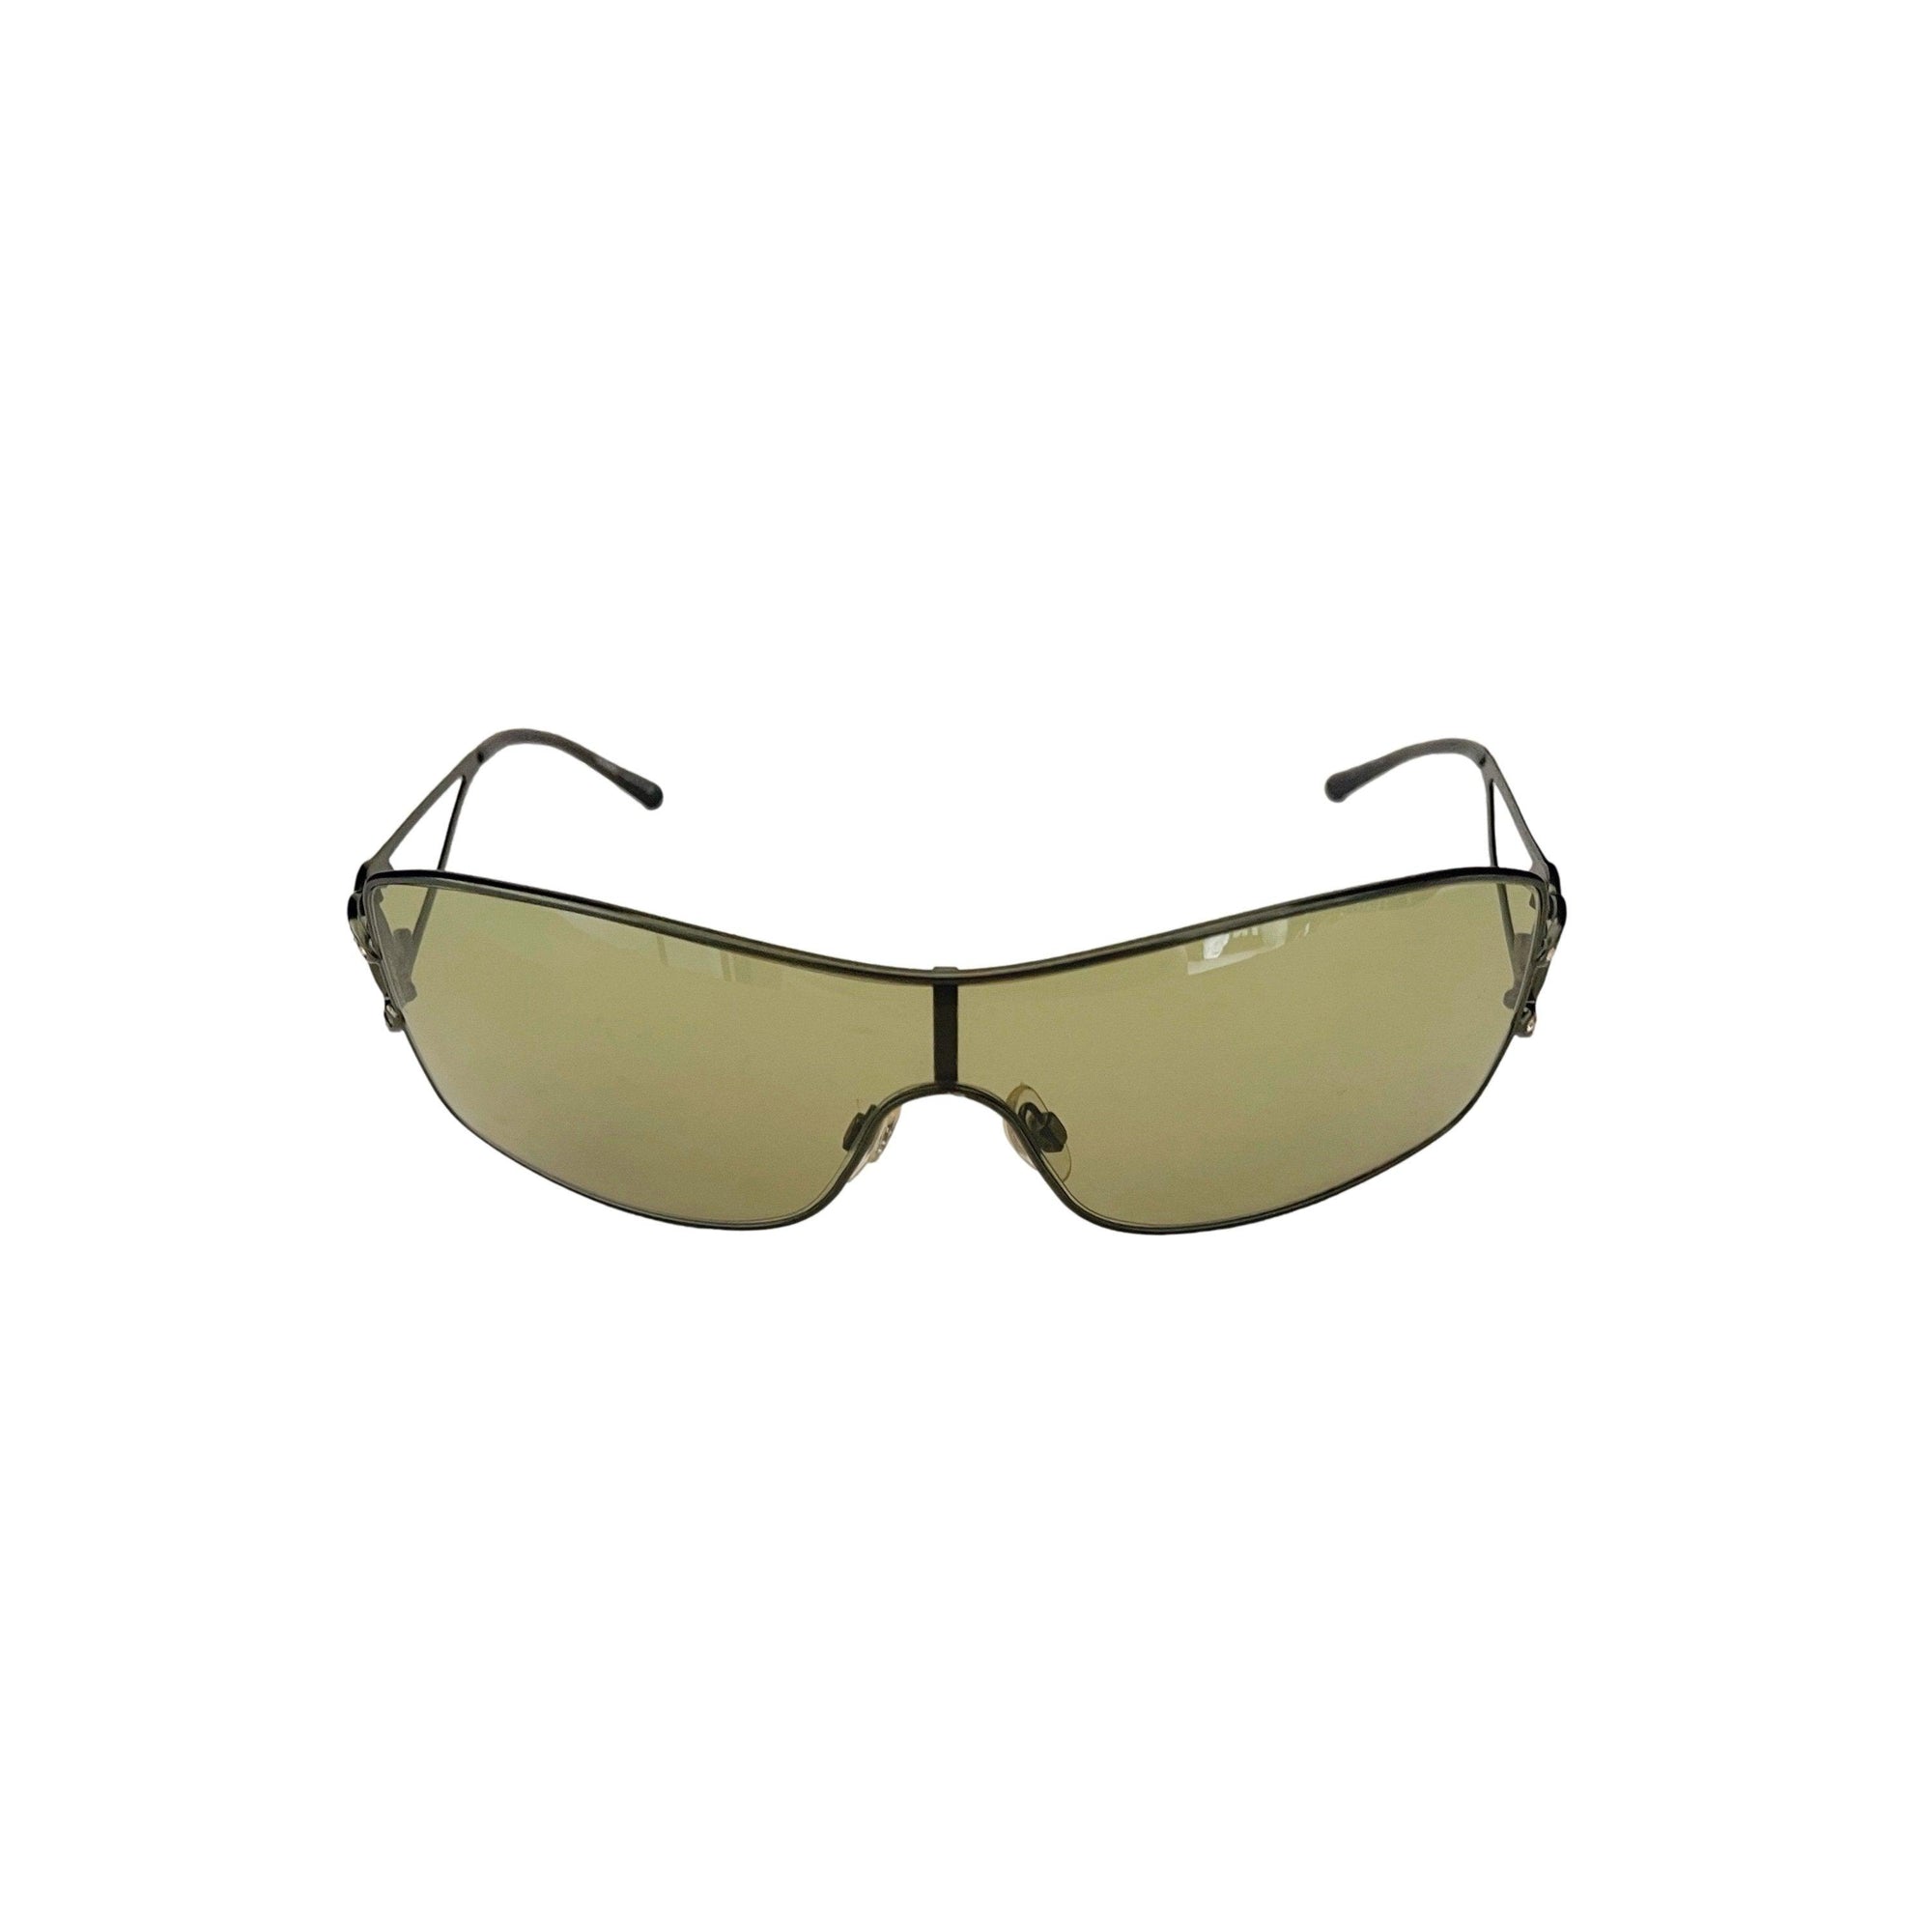 Chanel Yellow Square Rimless Sunglasses - Sunglasses